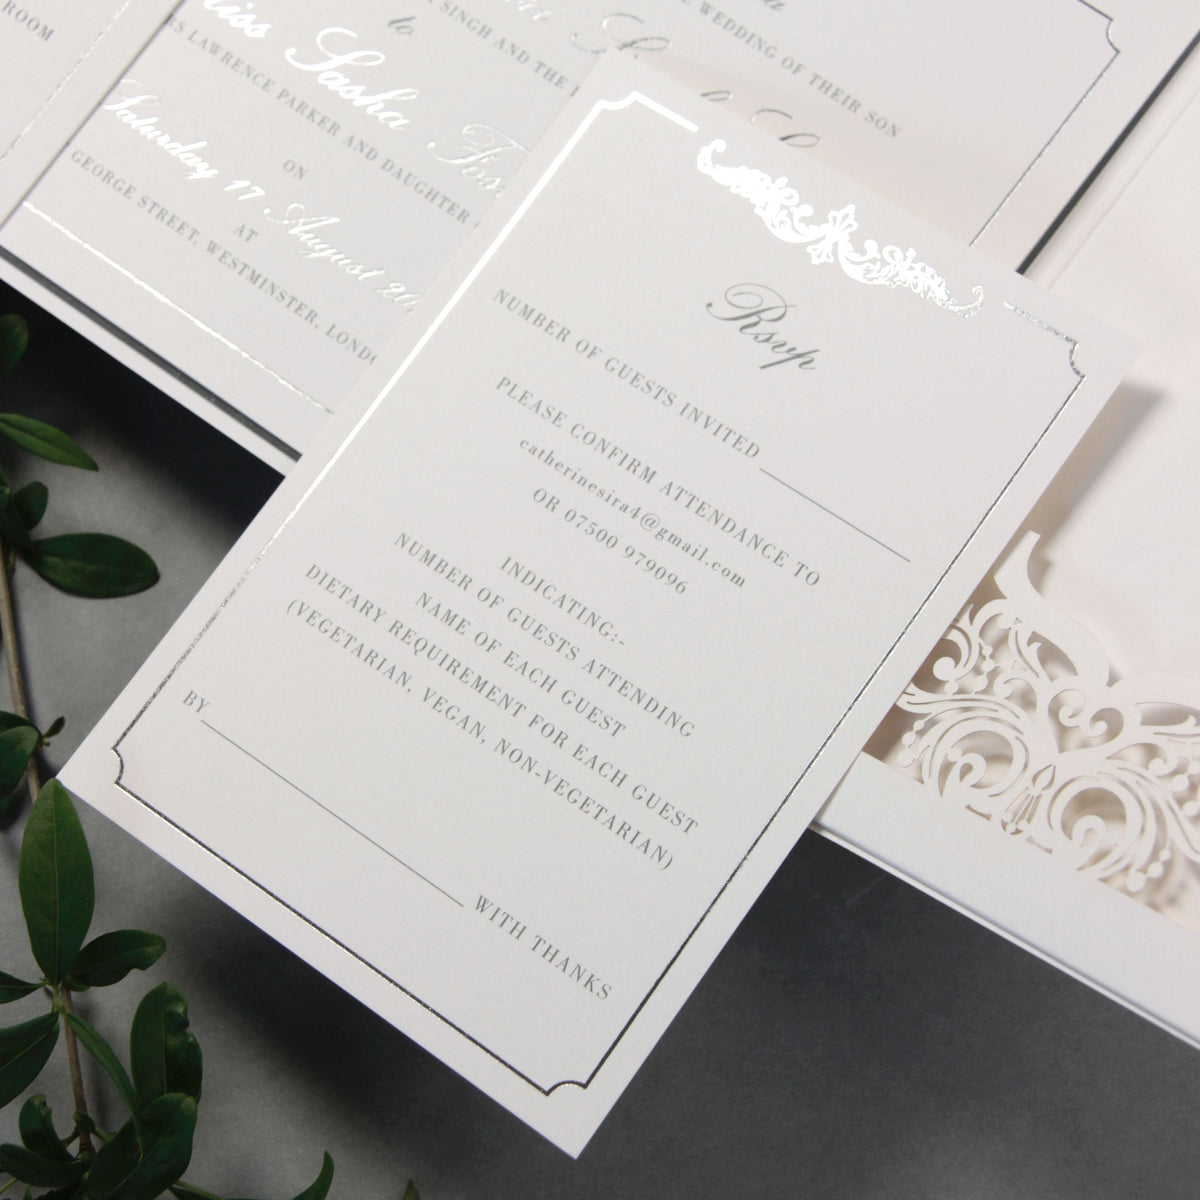 Luxury Siver Foil Pocket Fold Suite pour le jour du mariage, RSVP, suite d'invitation à carte d'information avec poche coupée au laser, script de calligraphie